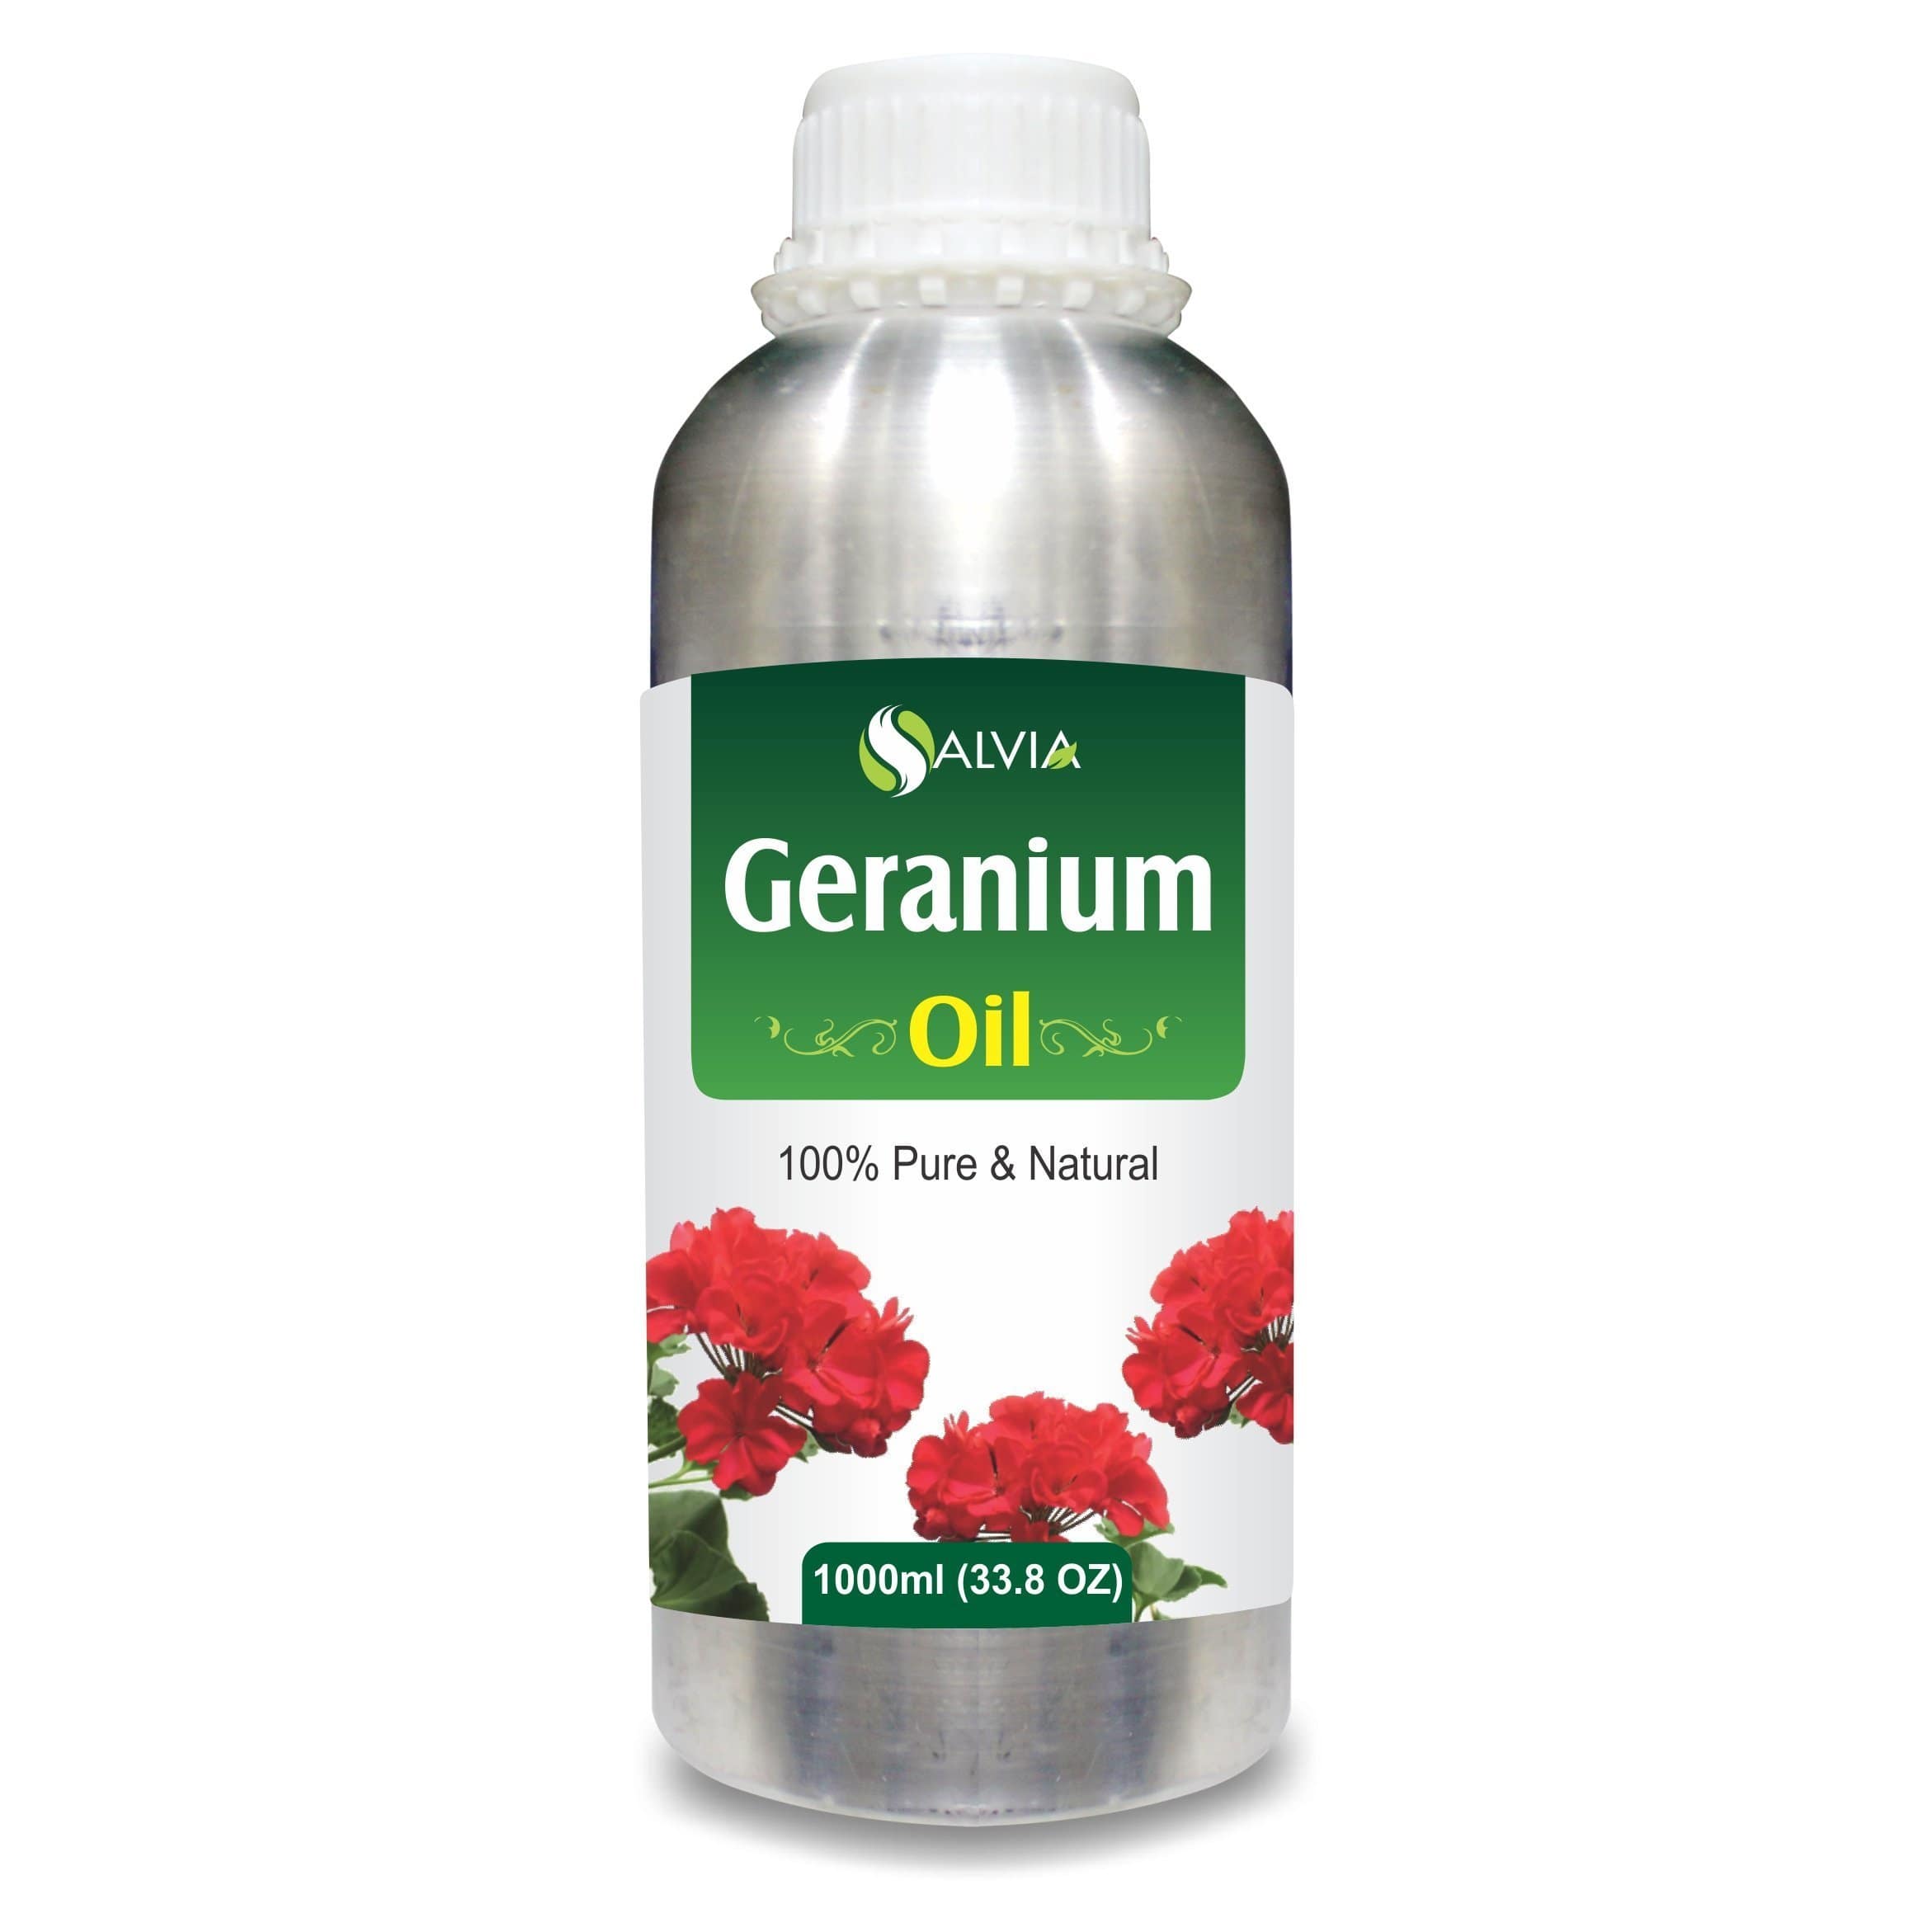 geranium oil price